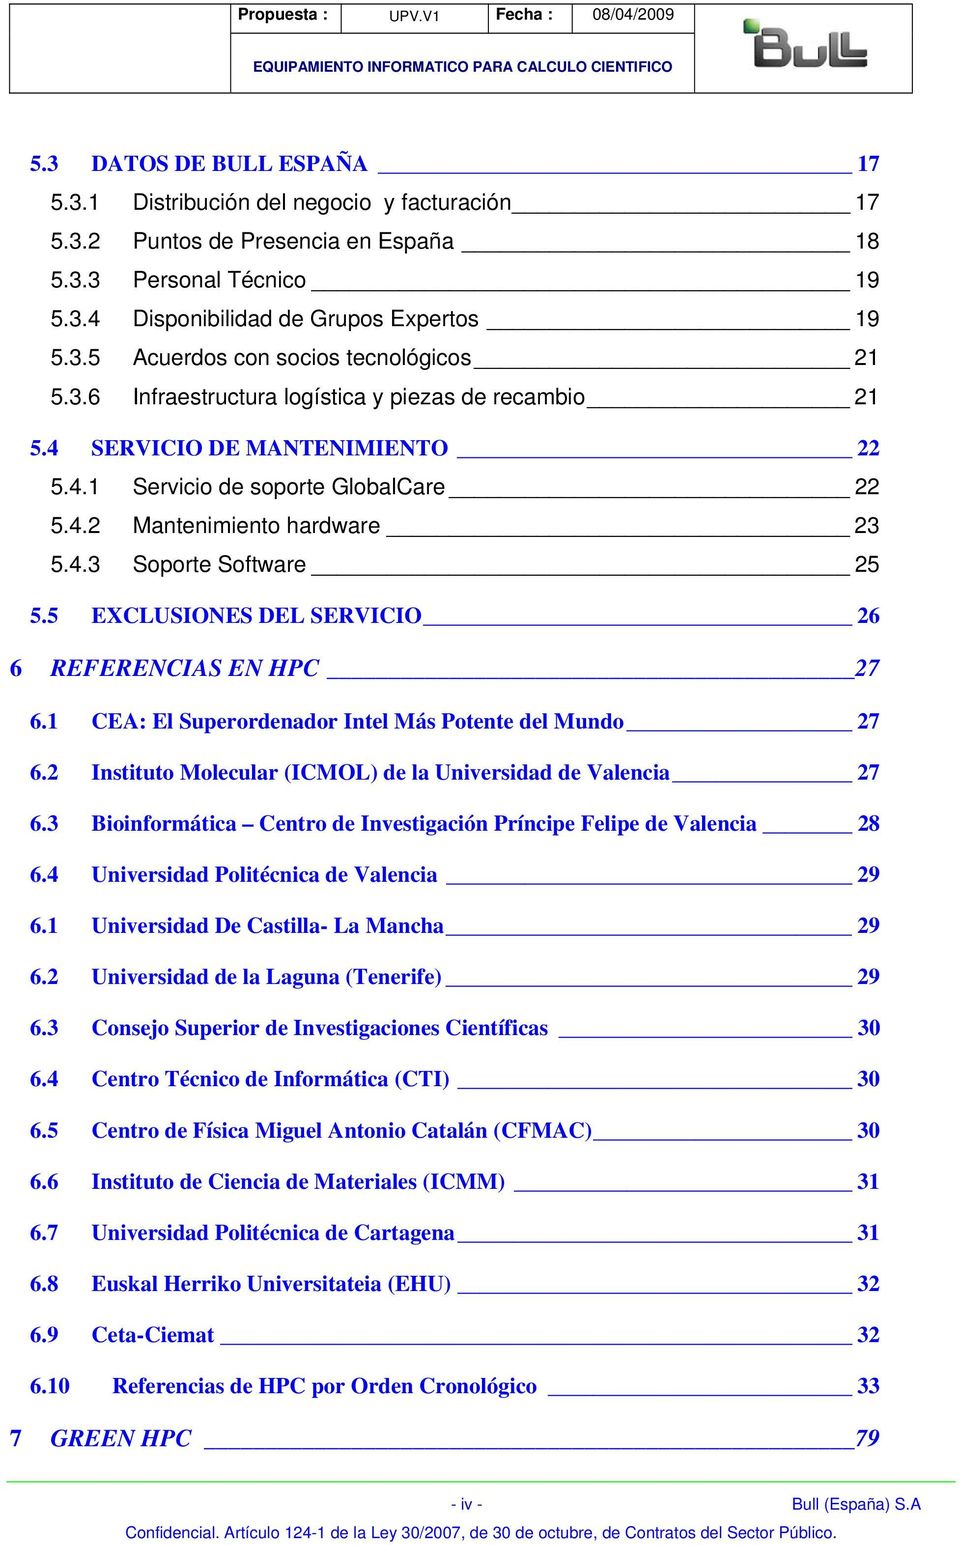 5 EXCLUSIONES DEL SERVICIO 26 6 REFERENCIAS EN HPC 27 6.1 CEA: El Superordenador Intel Más Potente del Mundo 27 6.2 Instituto Molecular (ICMOL) de la Universidad de Valencia 27 6.